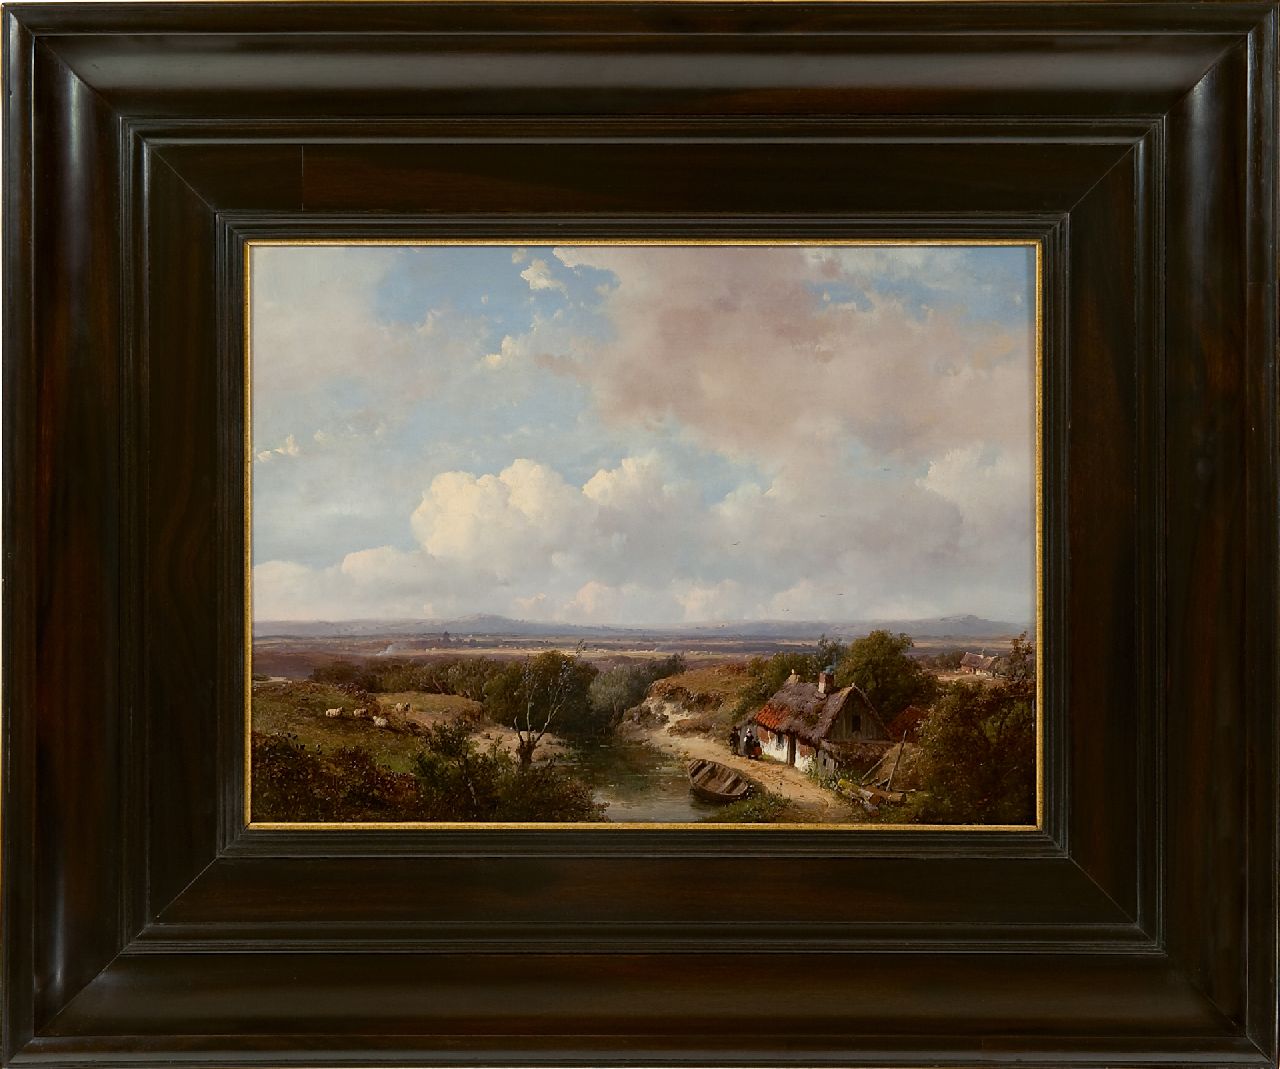 Schelfhout A.  | Andreas Schelfhout, Panoramisch zomerlandschap, olieverf op paneel 28,1 x 39,0 cm, gesigneerd linksonder en gedateerd '50